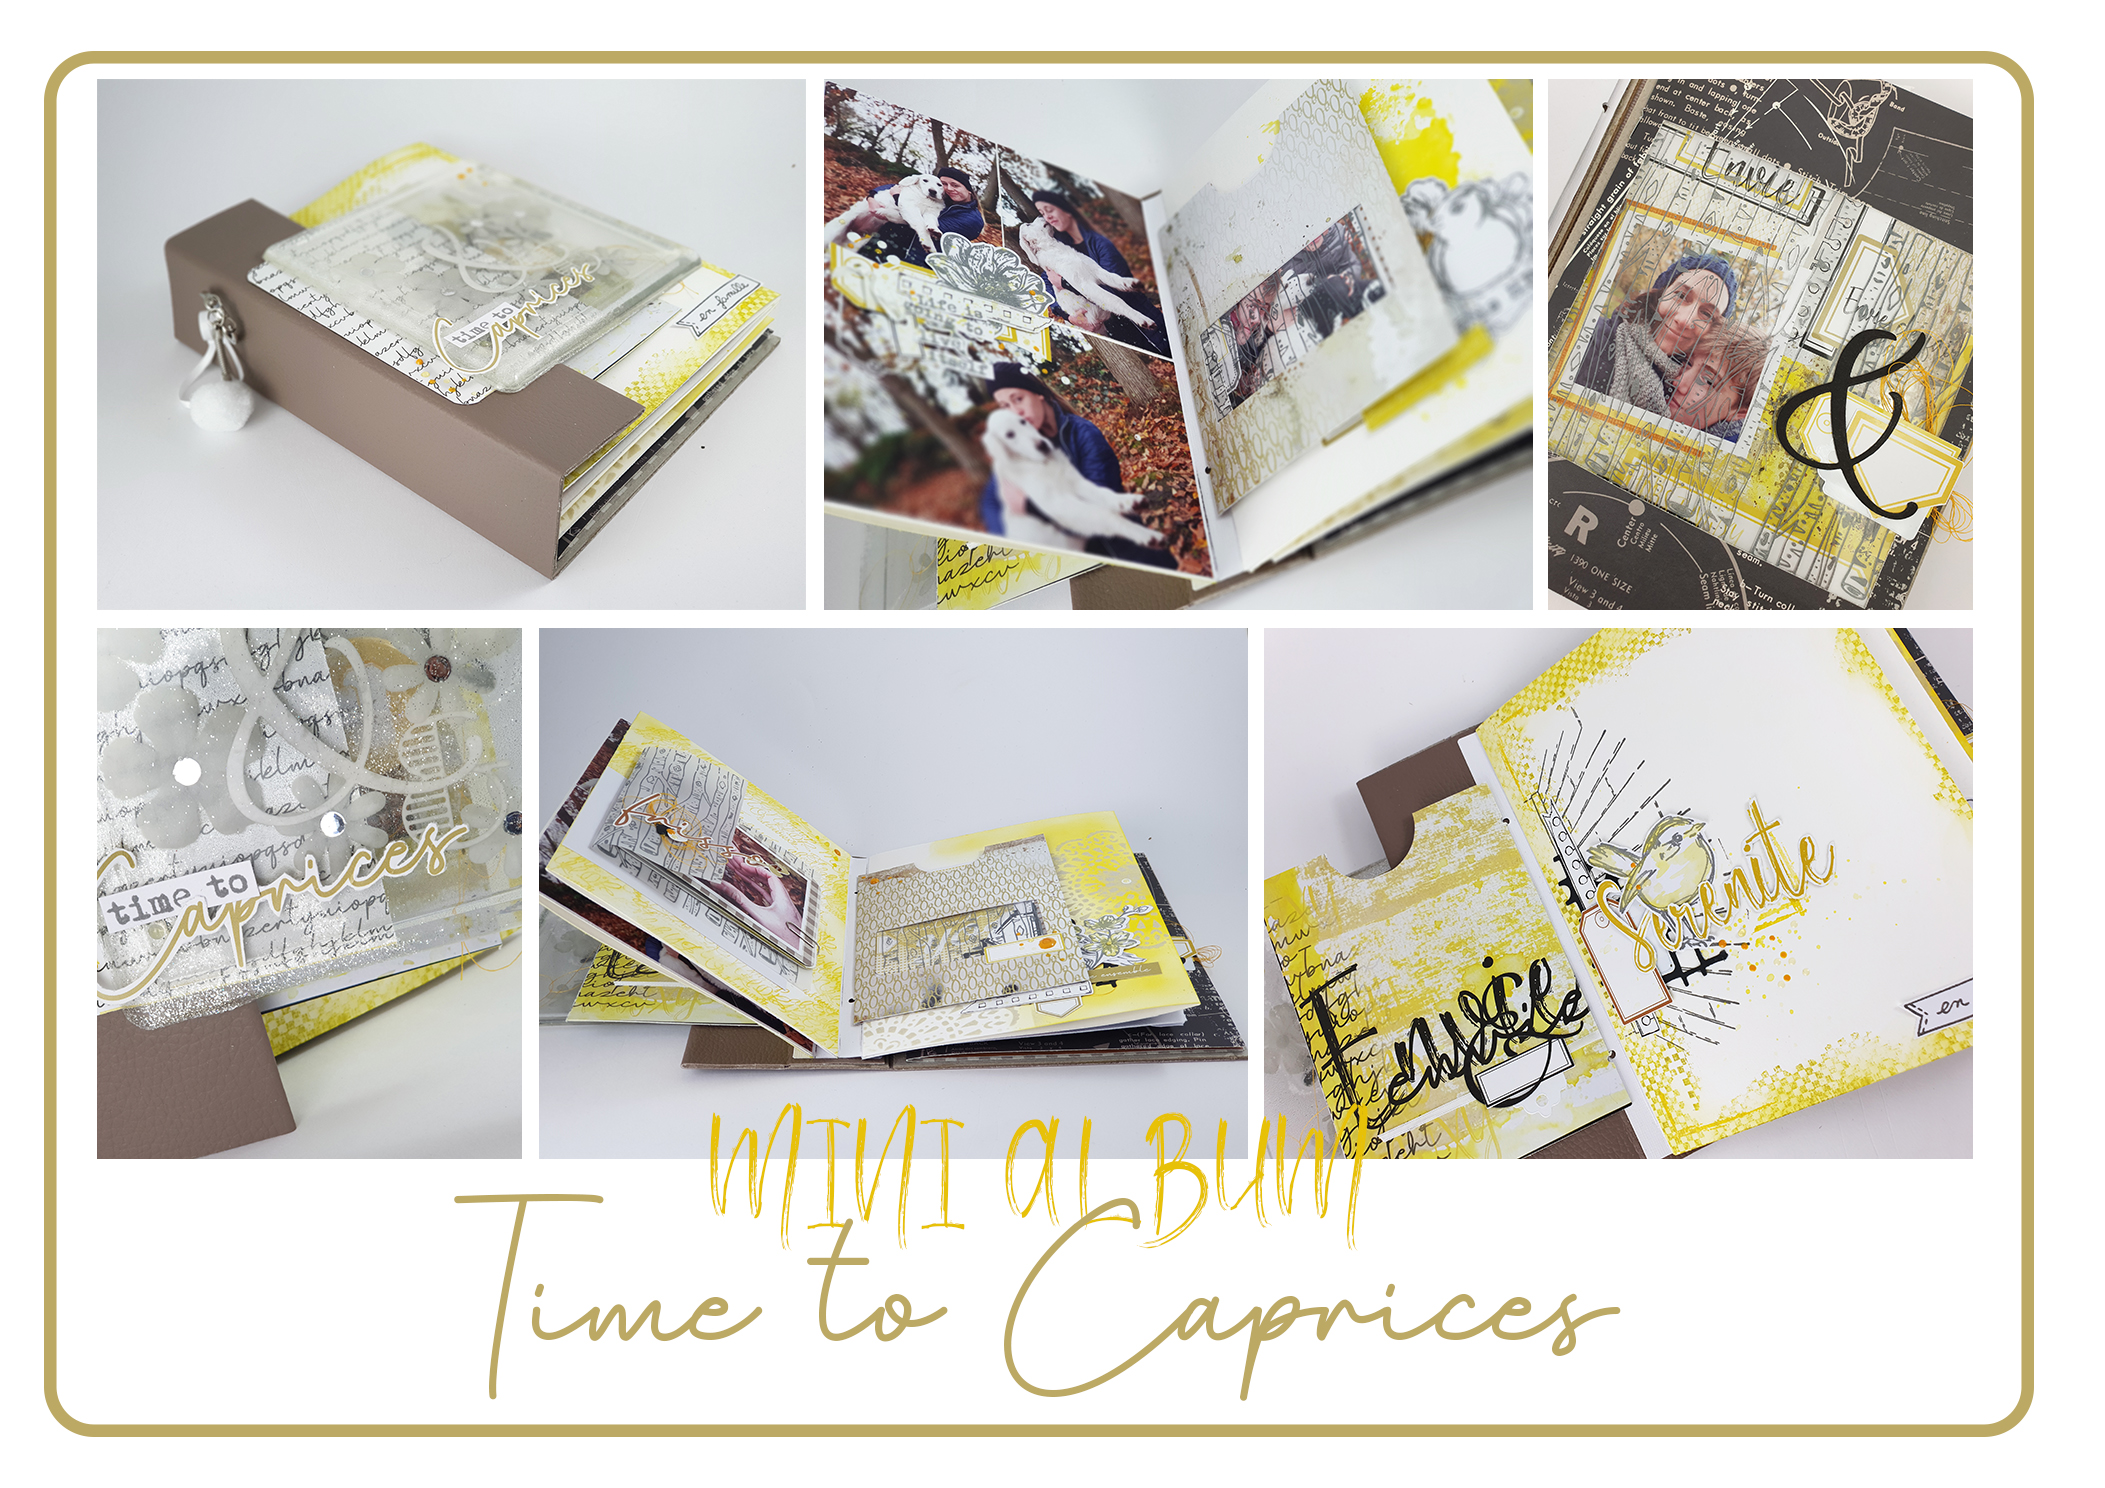 Le Kit du Minialbum Time To Caprices est disponible chez Quiscrap